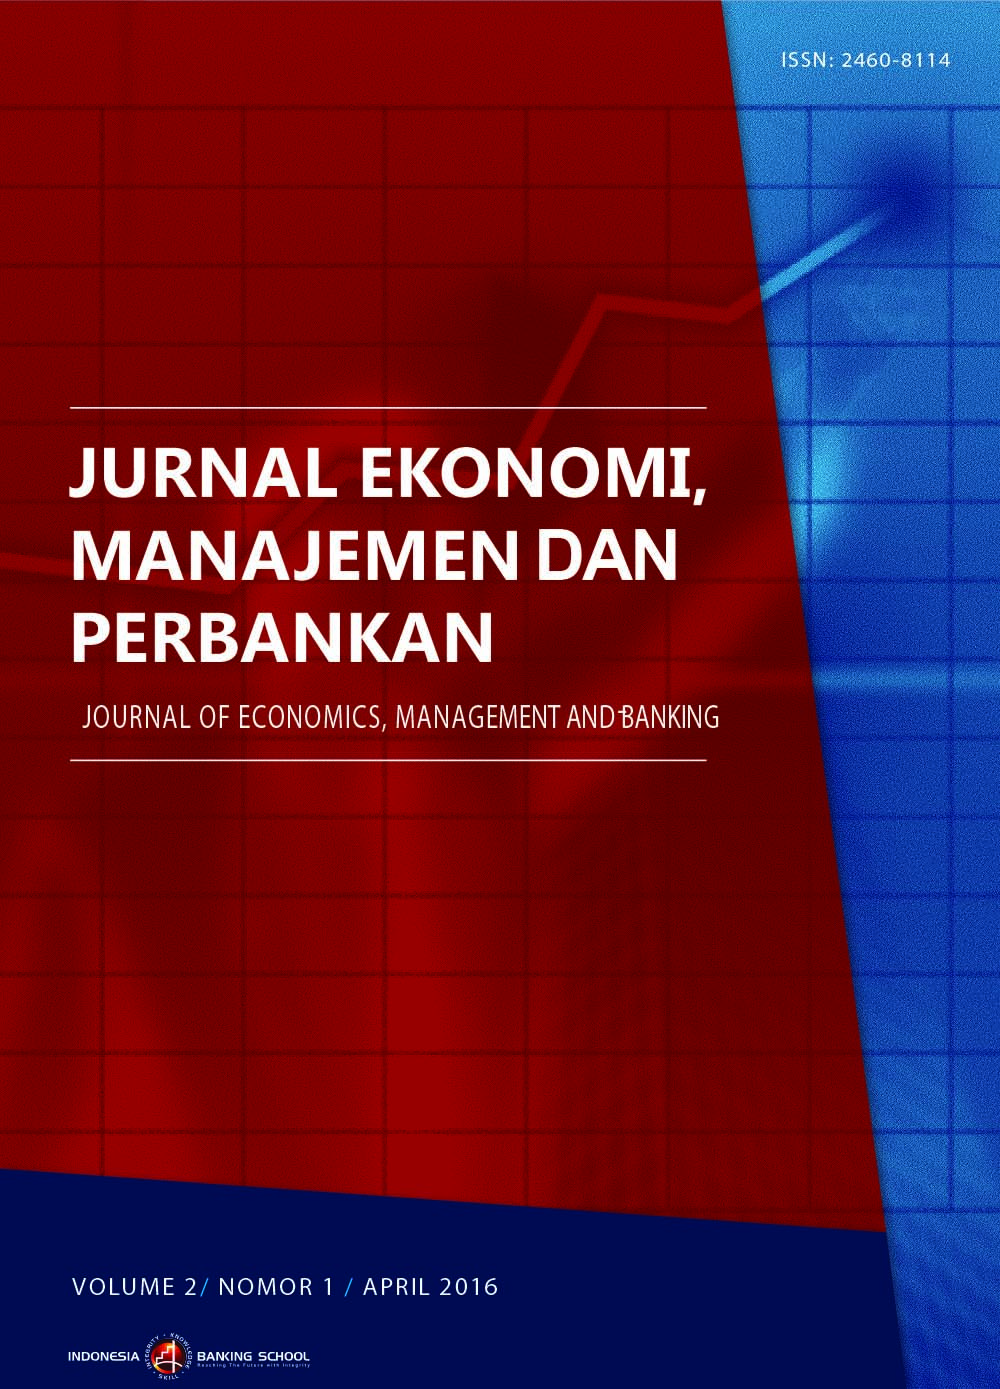 Jurnal Ekonomi, Manajemen dan Perbankan (Journal of Economics, Management and Banking),Volume 2 No.1, April 2016